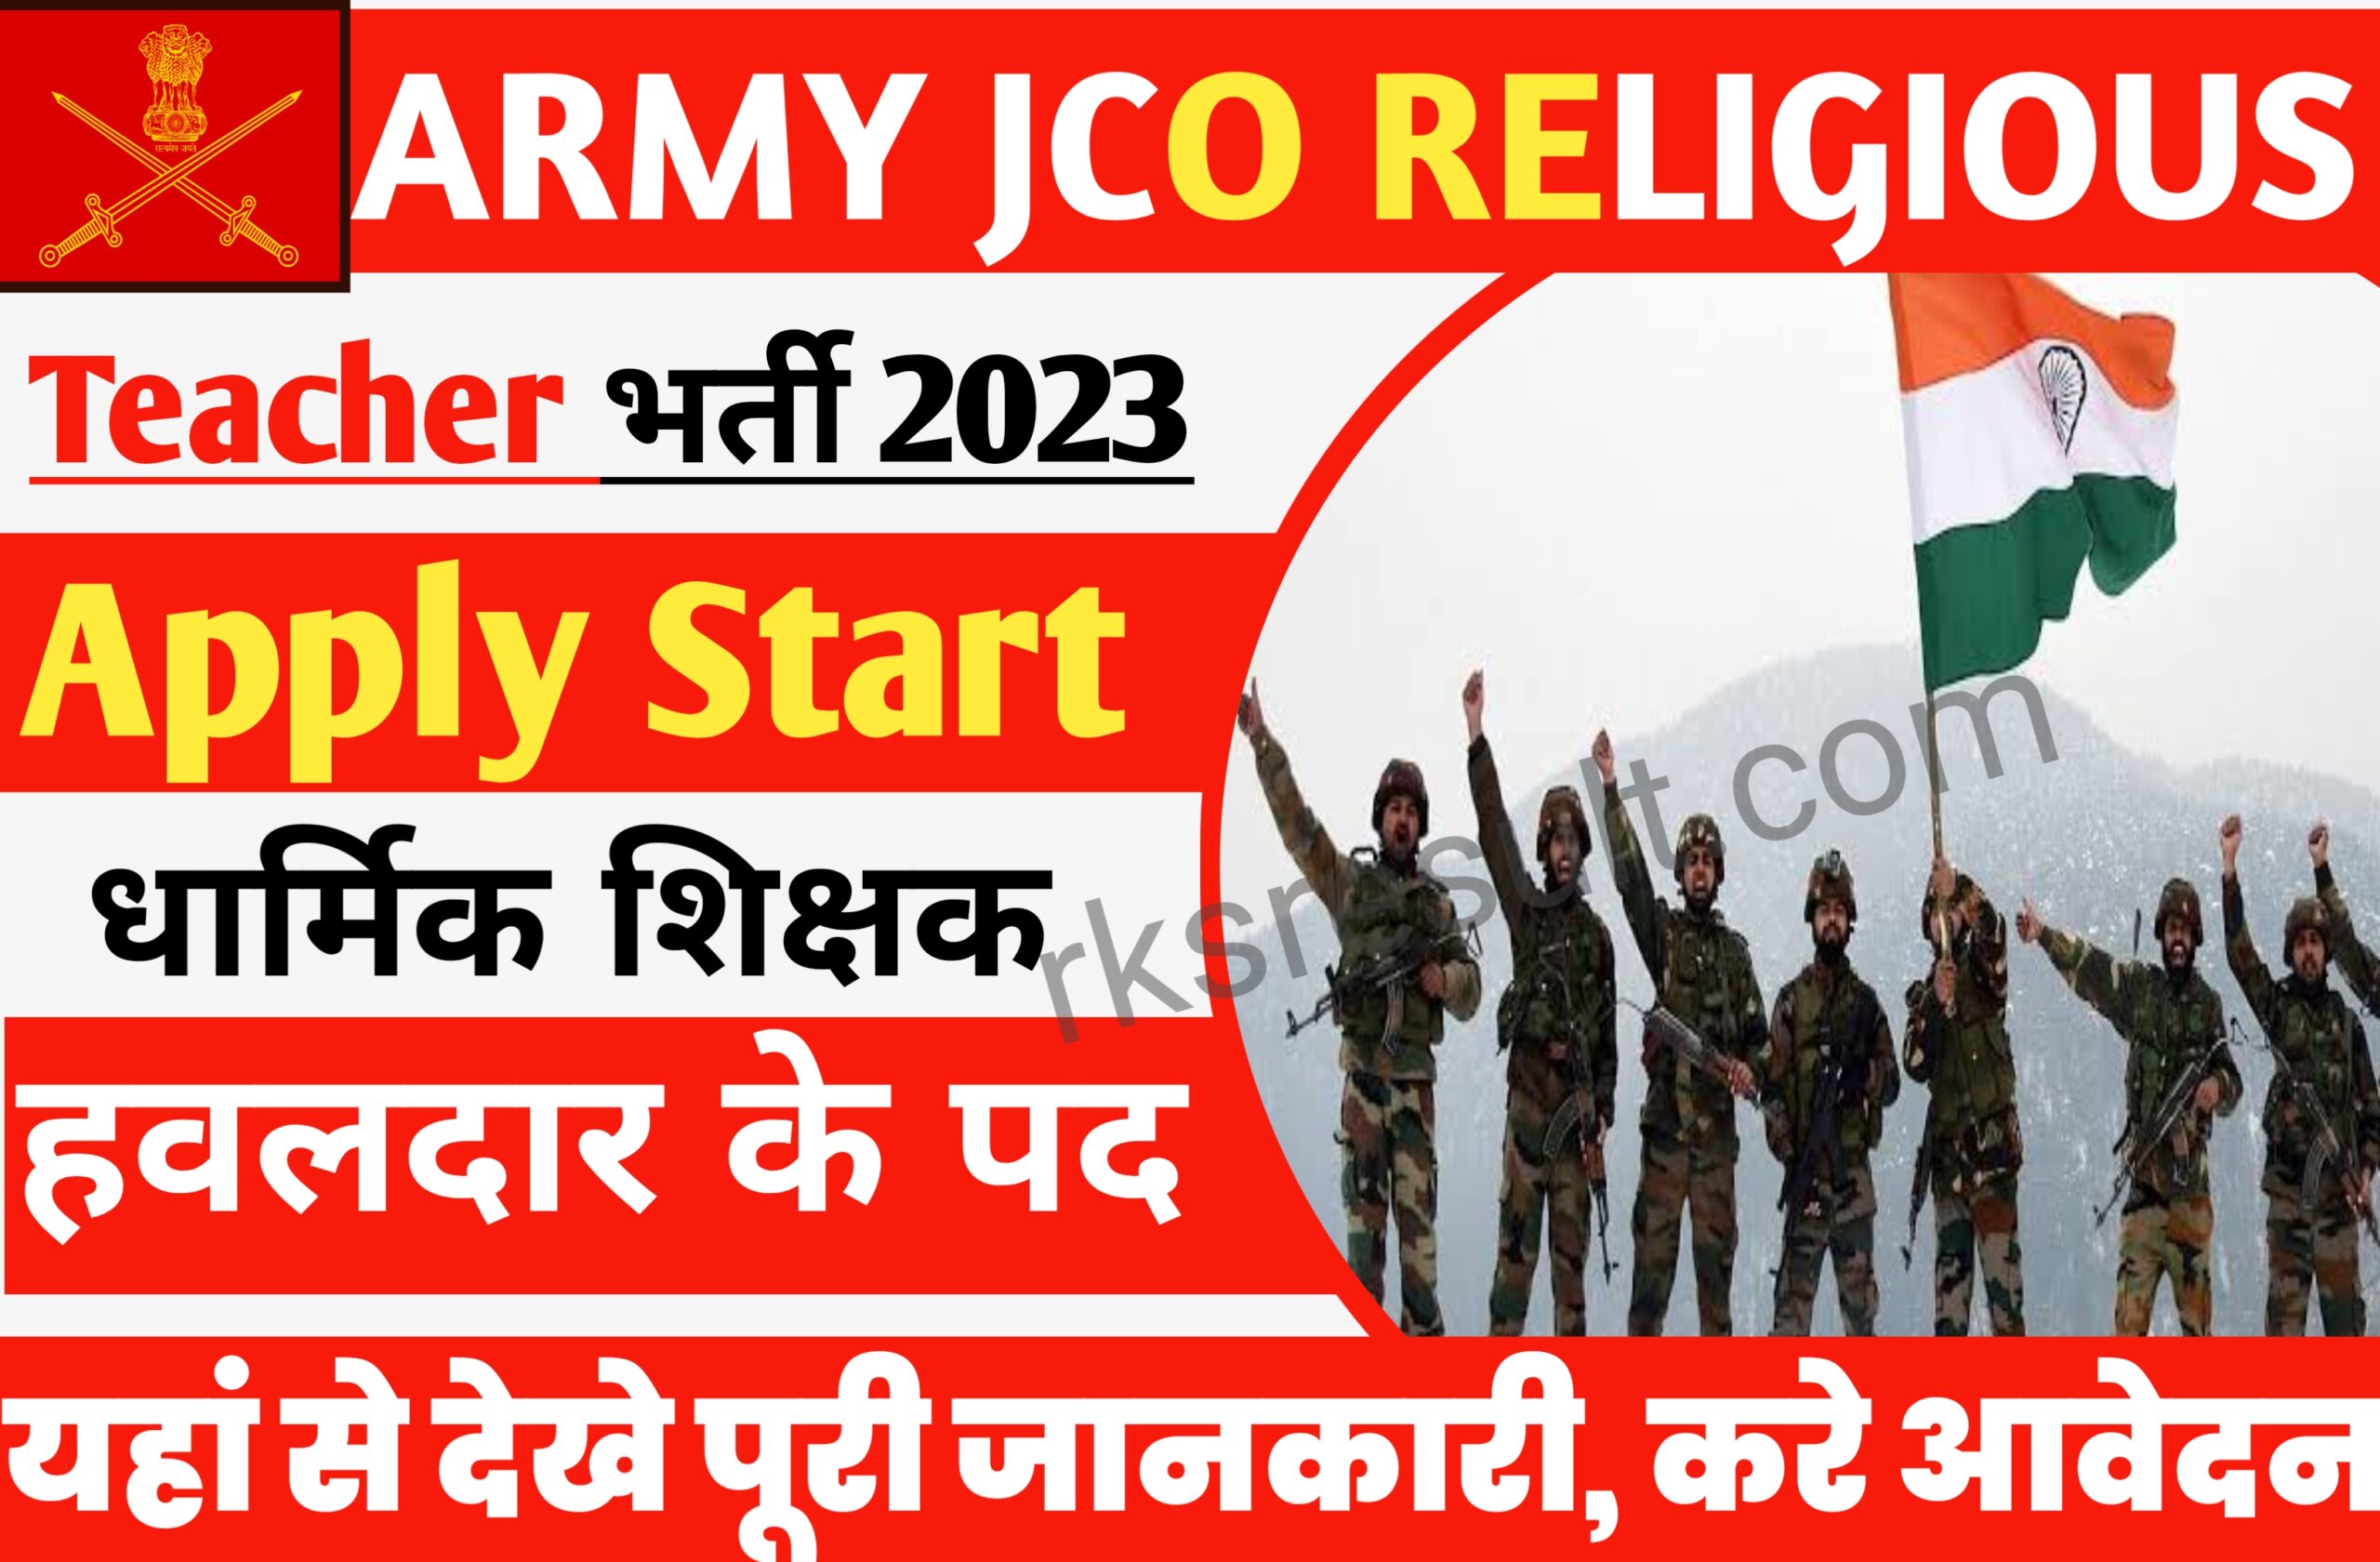 Army JCO Religious Teacher Recruitment 2023